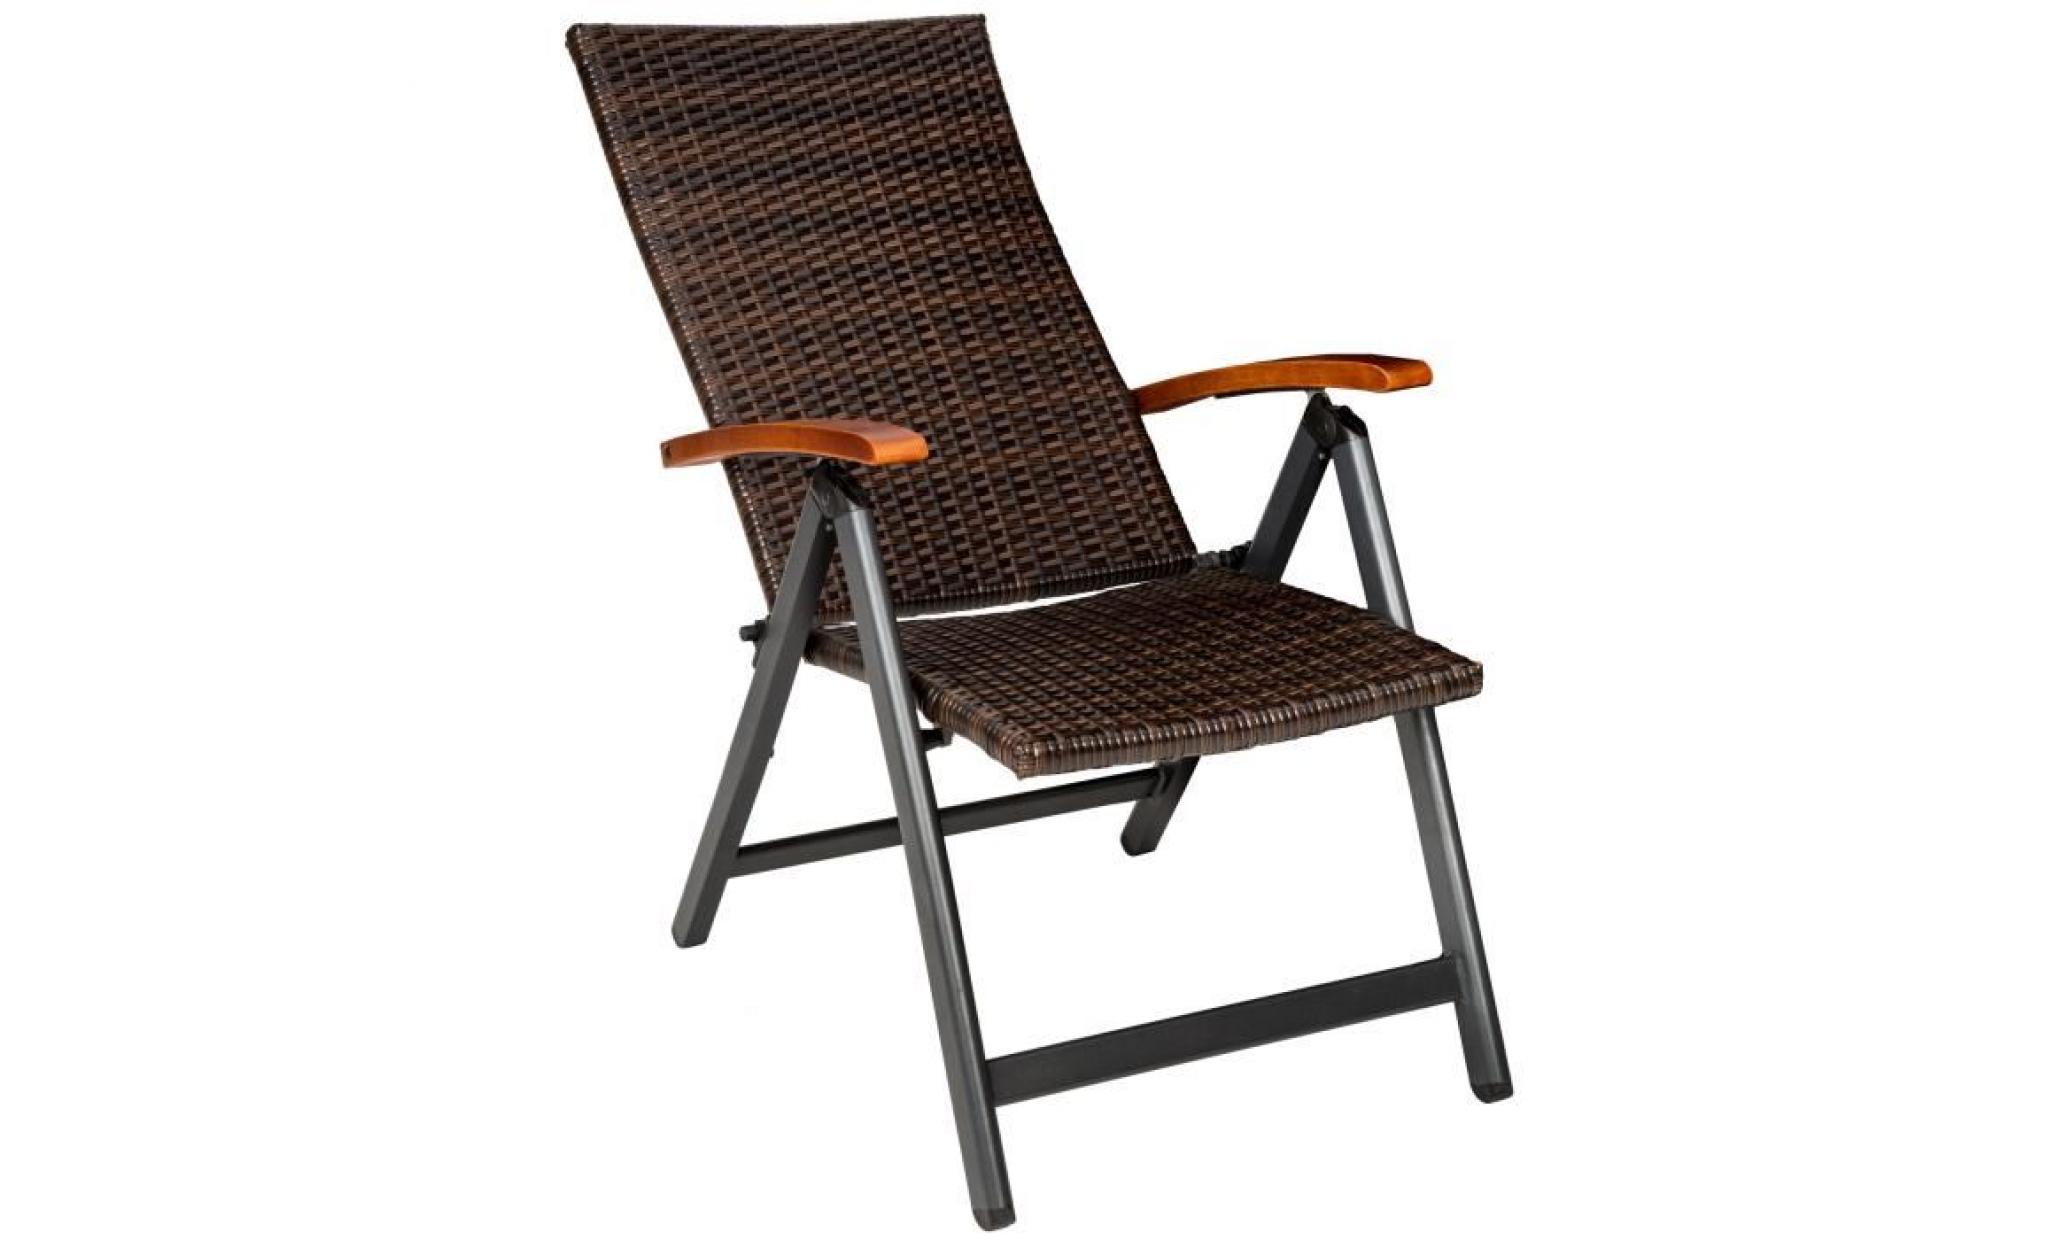 tectake chaise de jardin fauteuil de jardin de camping pliante réglable en aluminium et résine tressée 68 cm x 59 cm x 109 cm marron pas cher